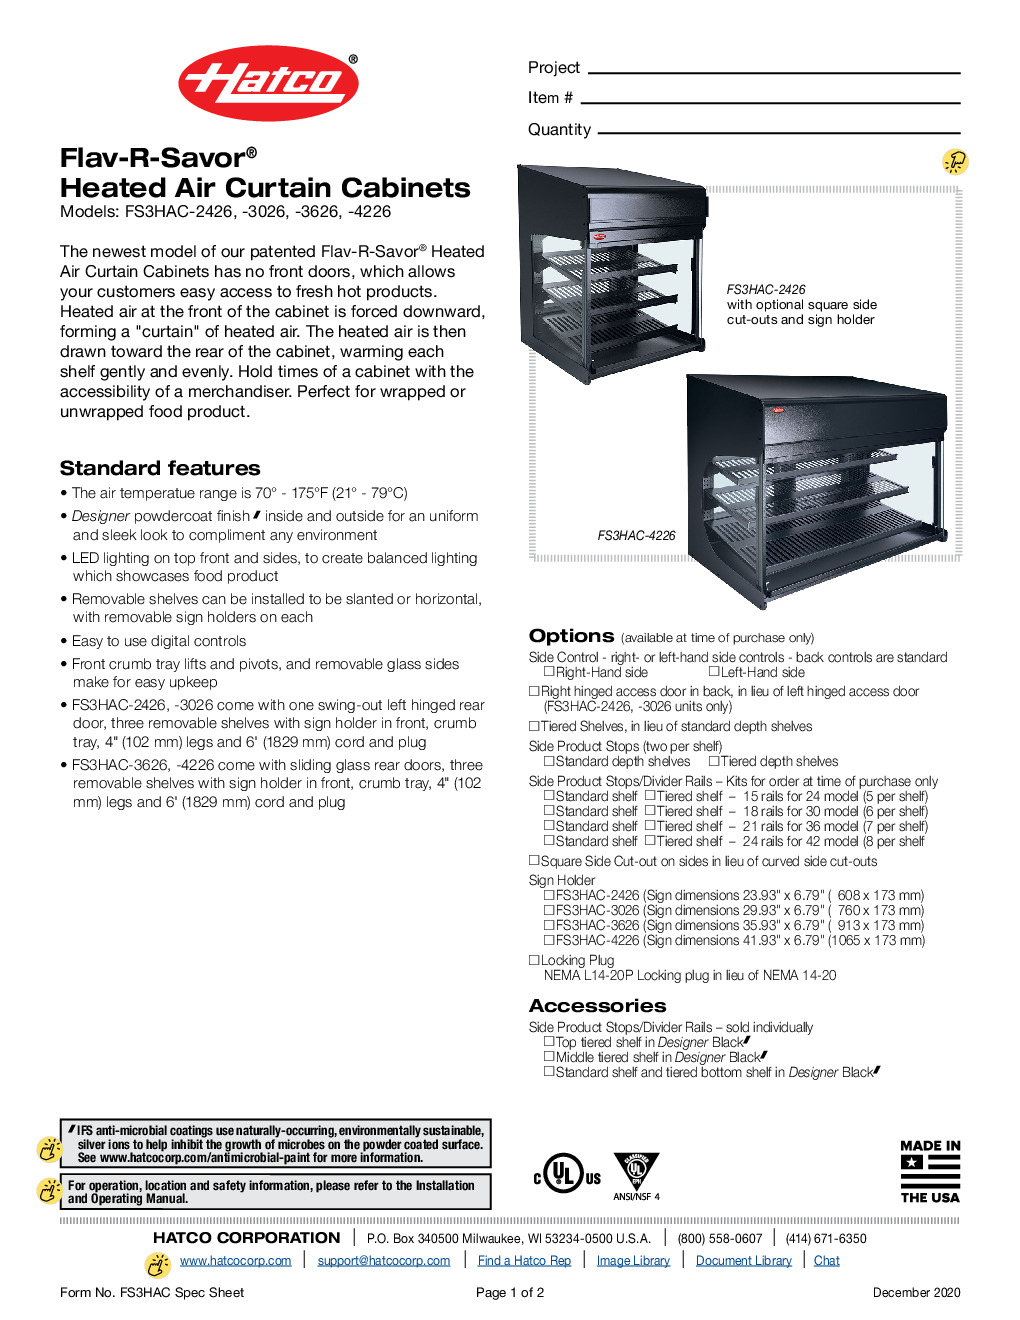 Hatco FS3HAC-3026 Countertop Hot Food Display Case